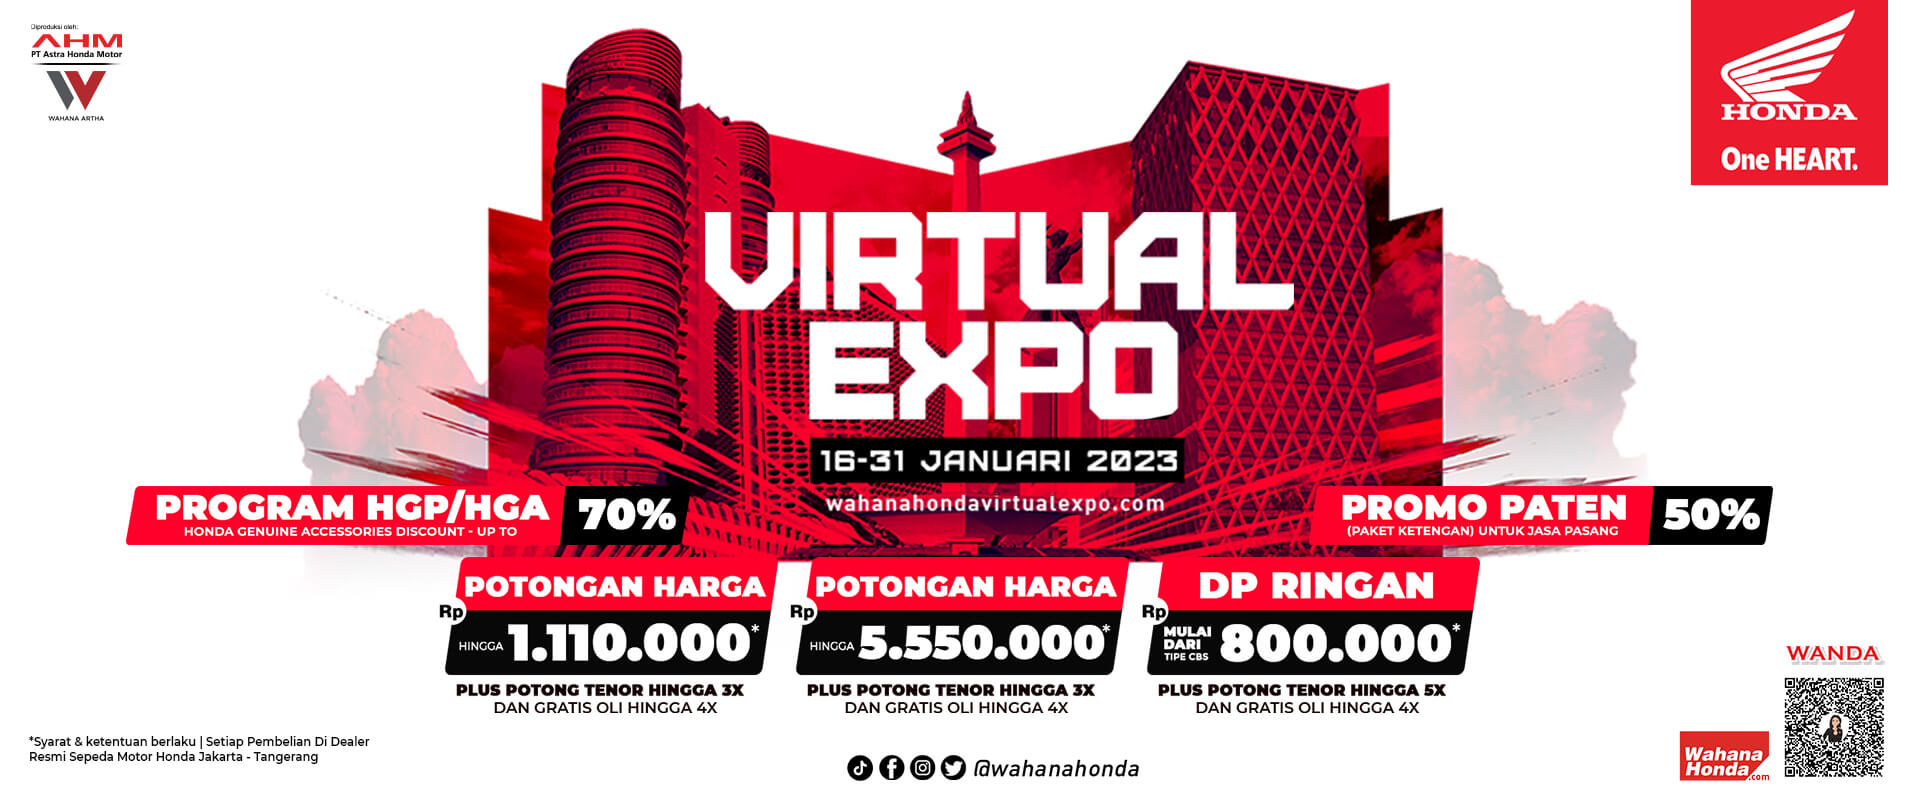 Wahana Honda Virtual Expo 16 - 31 Januari 2023